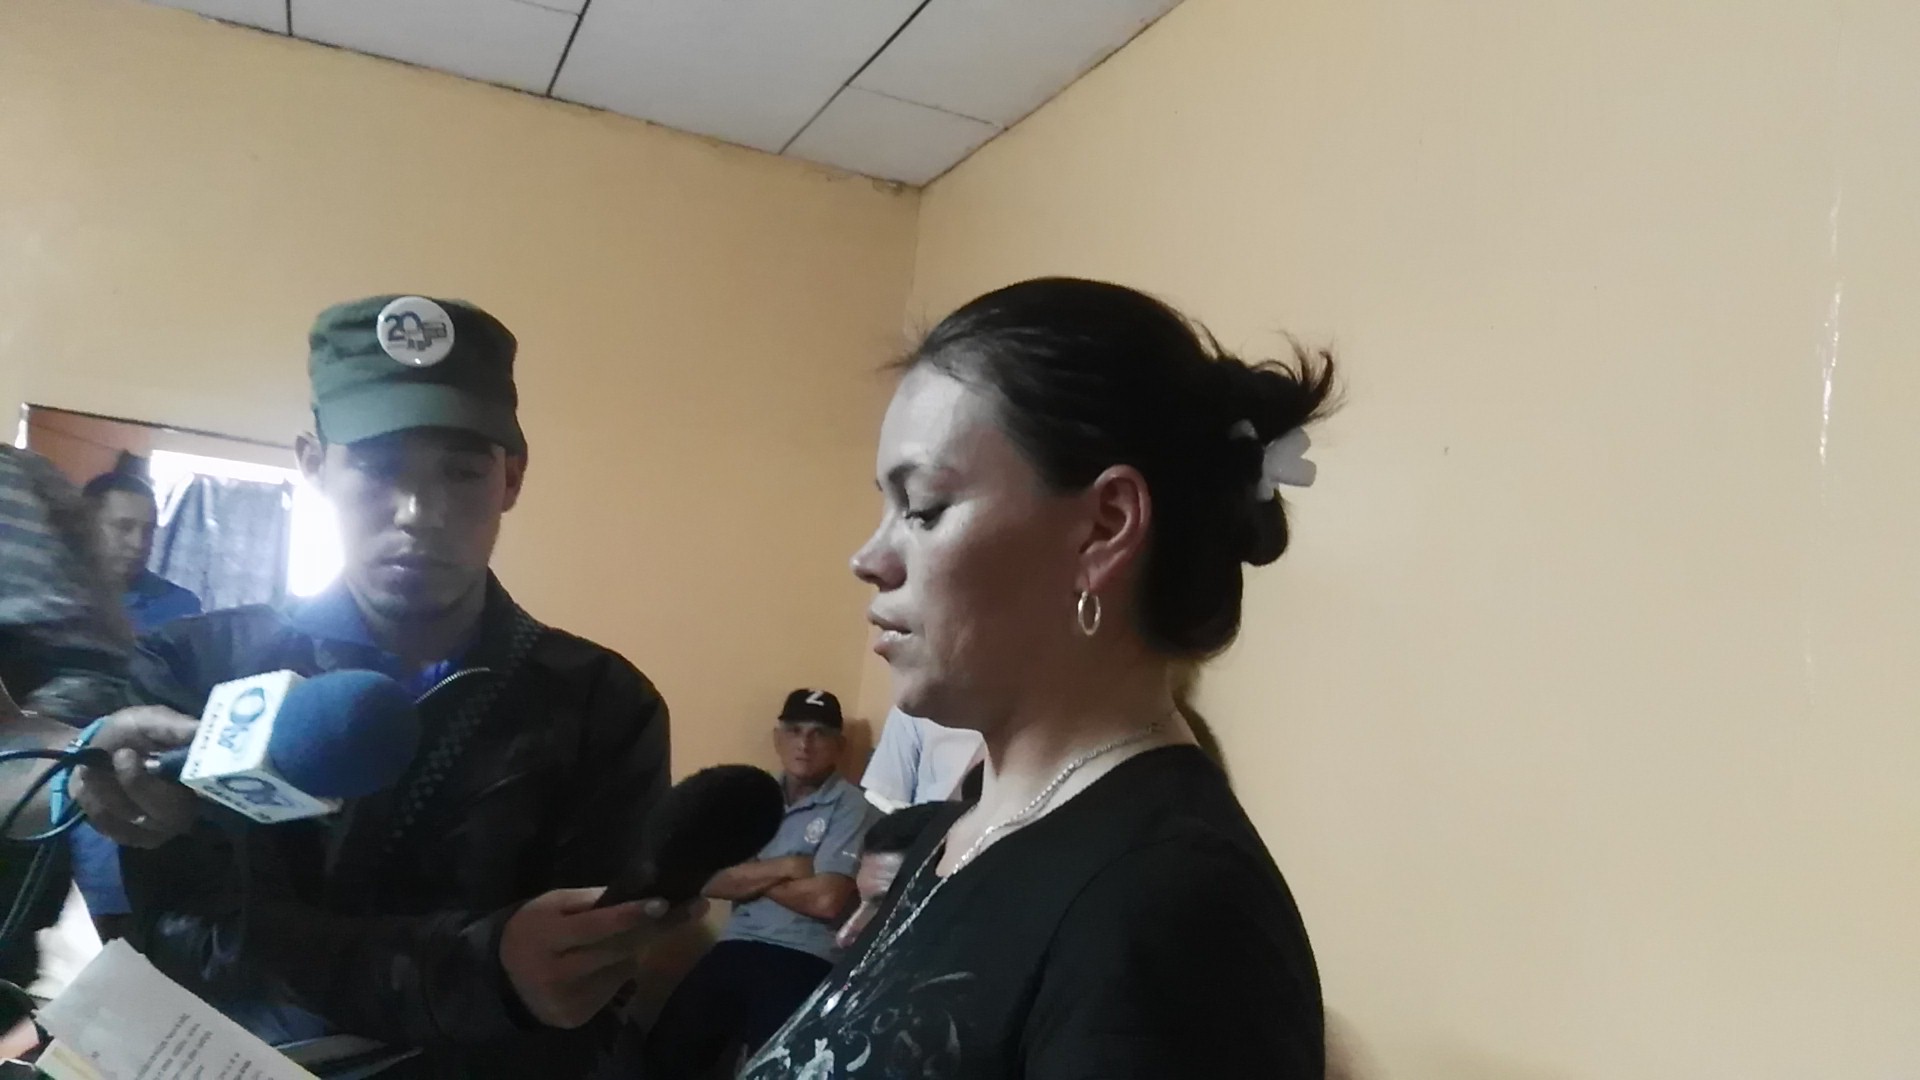 Piden a Policía la verdad de lo ocurrido en Ciudad Antigua - La Prensa (Nicaragua)